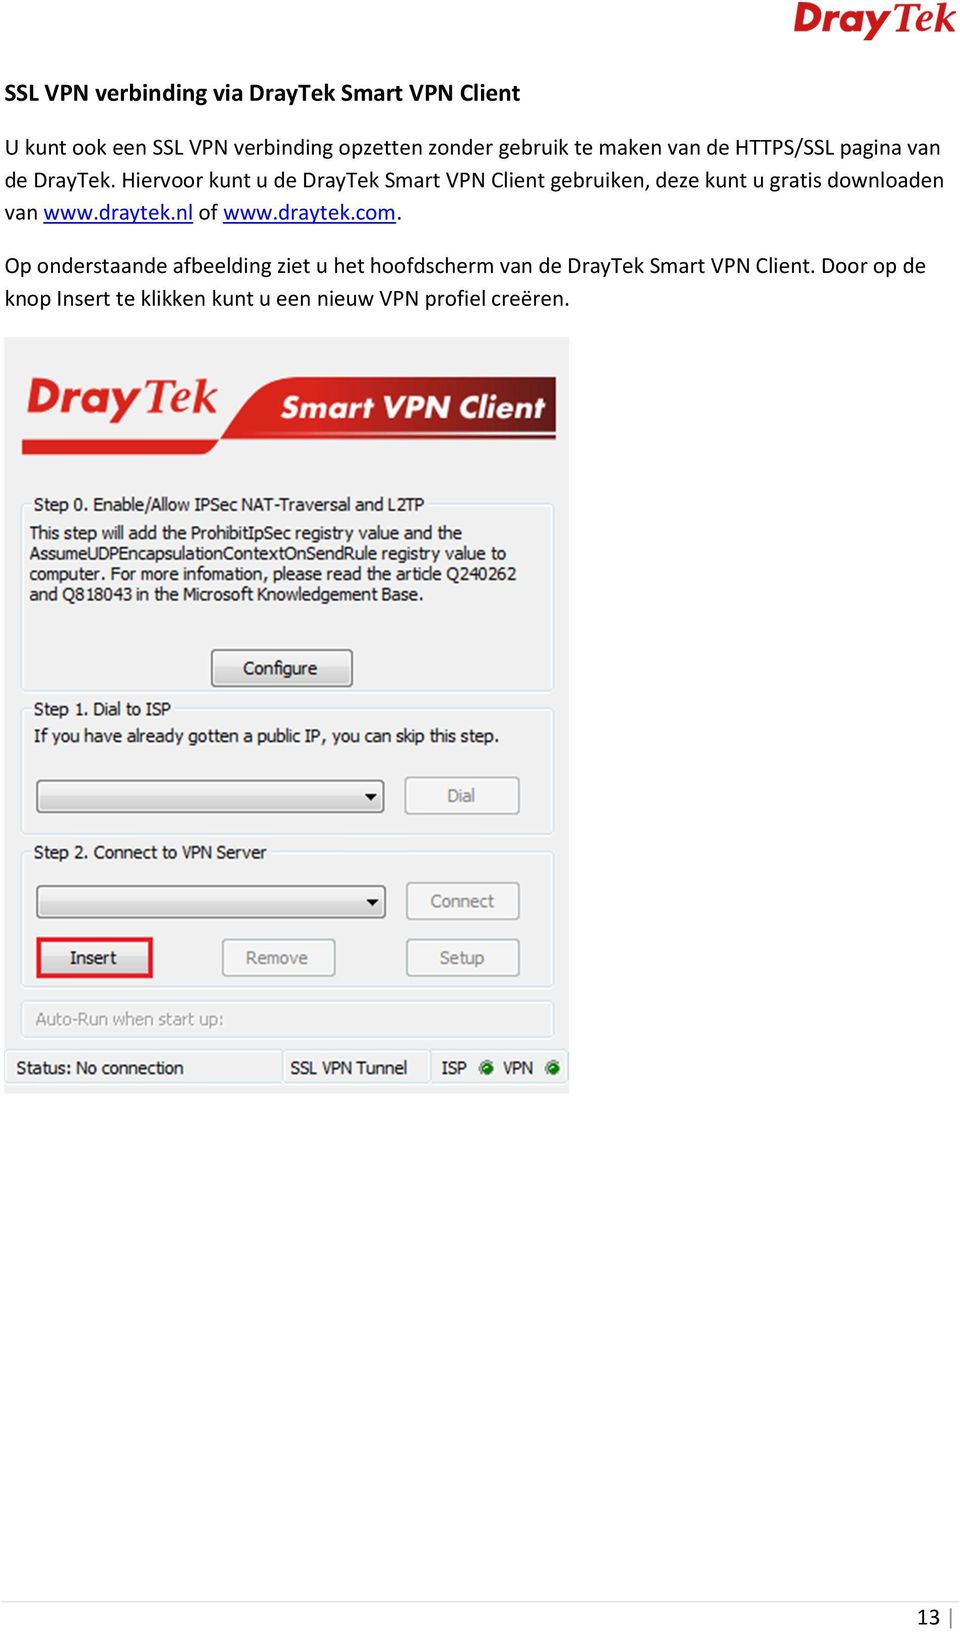 Hiervoor kunt u de DrayTek Smart VPN Client gebruiken, deze kunt u gratis downloaden van www.draytek.